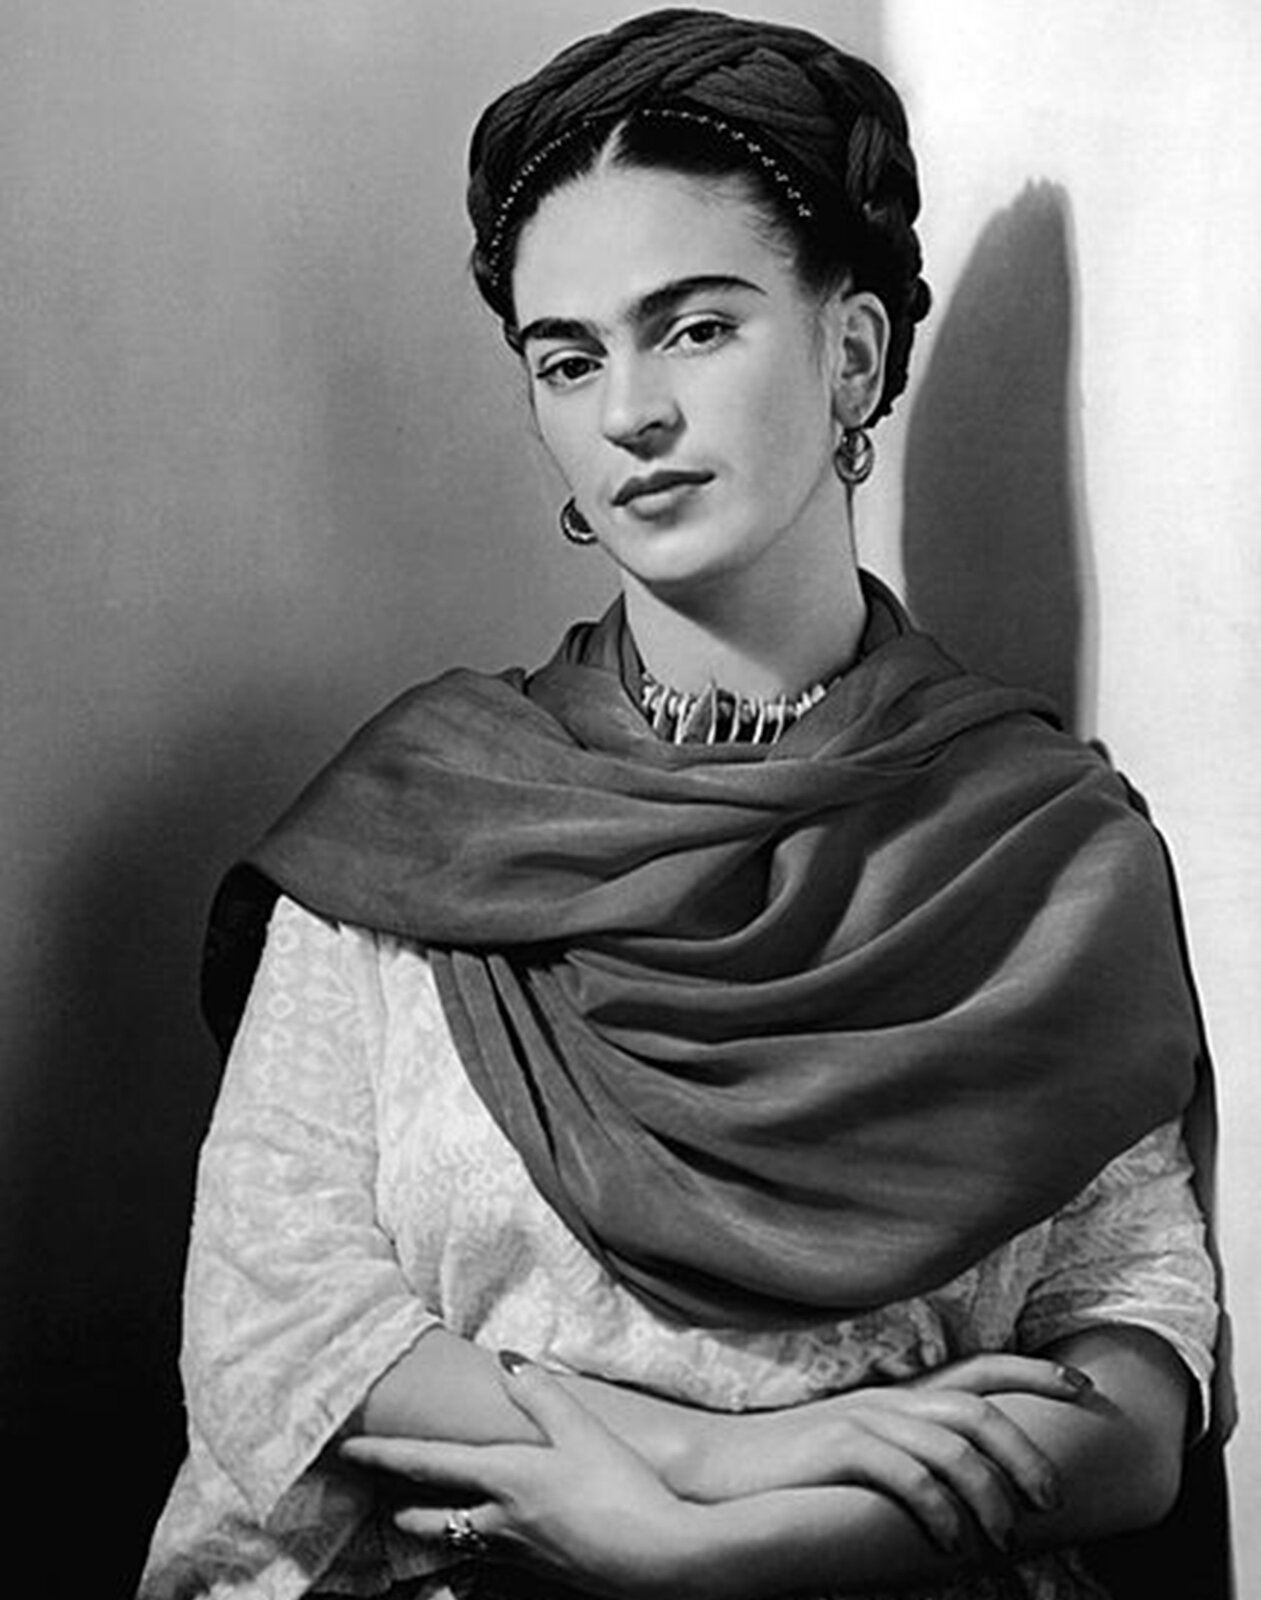 Frida Kahlo Frida Kahlo